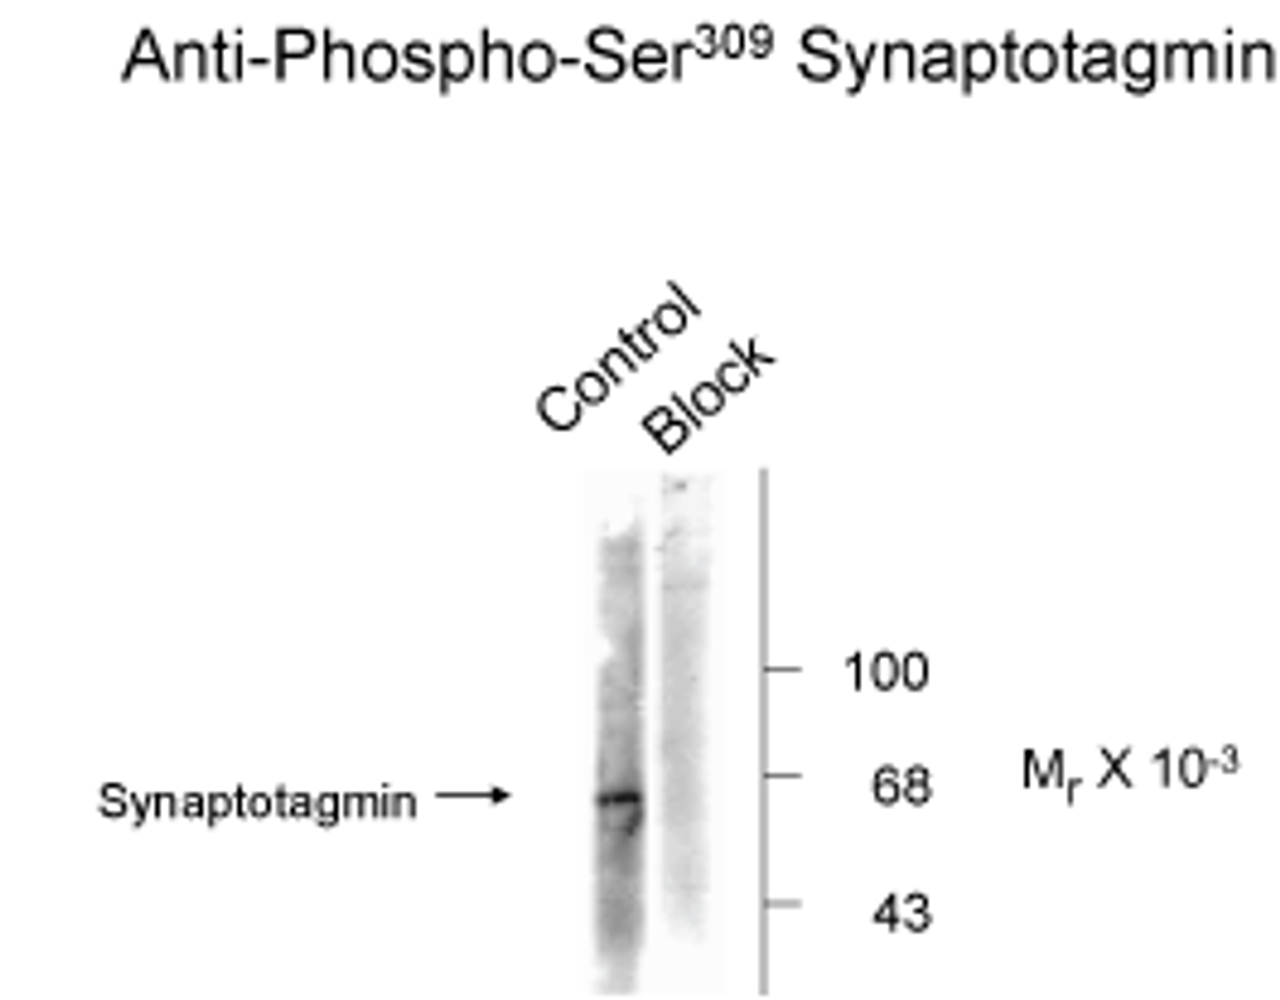 Synaptotagmin (Phospho-Ser309) Antibody